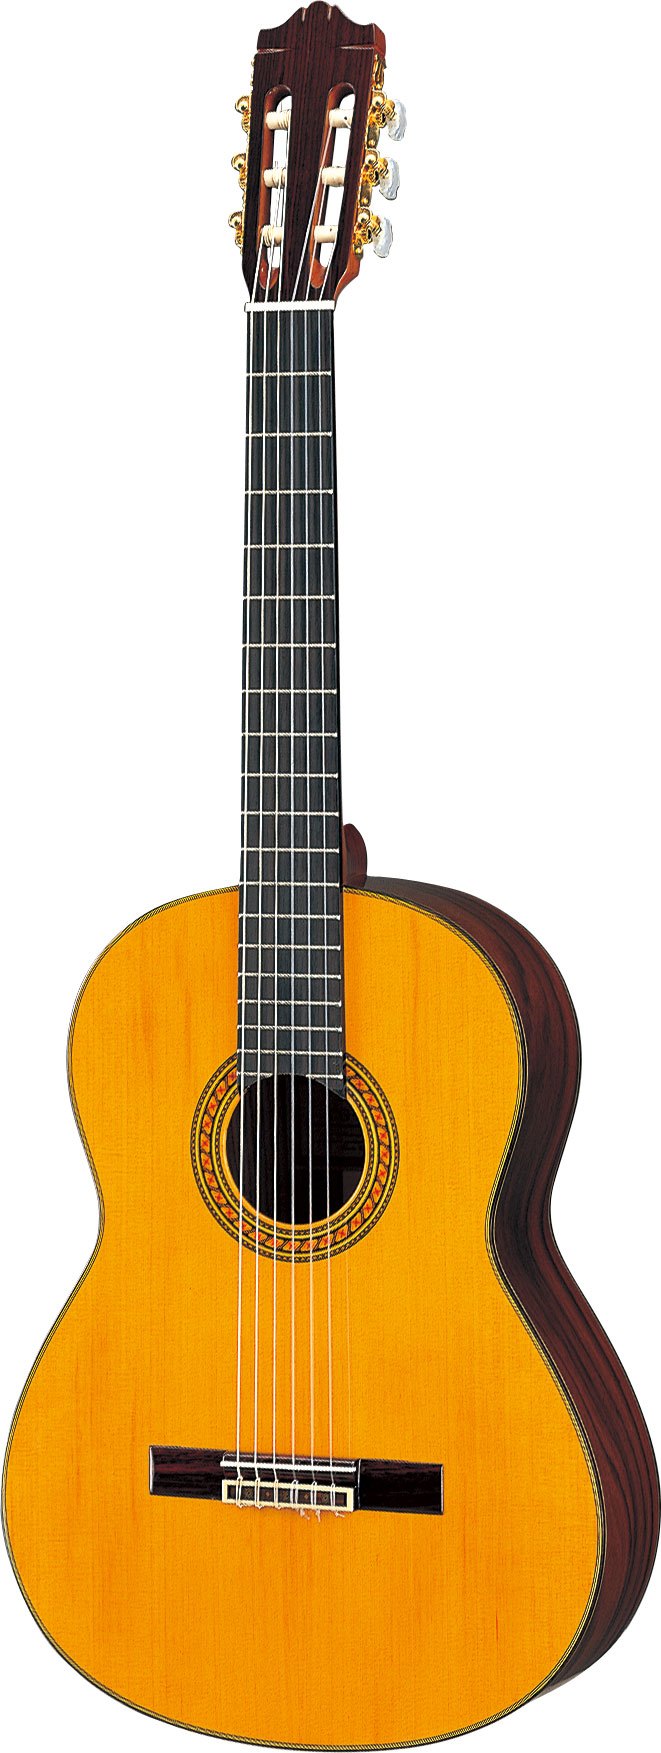 CG151C - クラシックギター・ナイロン弦ギター - 概要 - ヤマハ